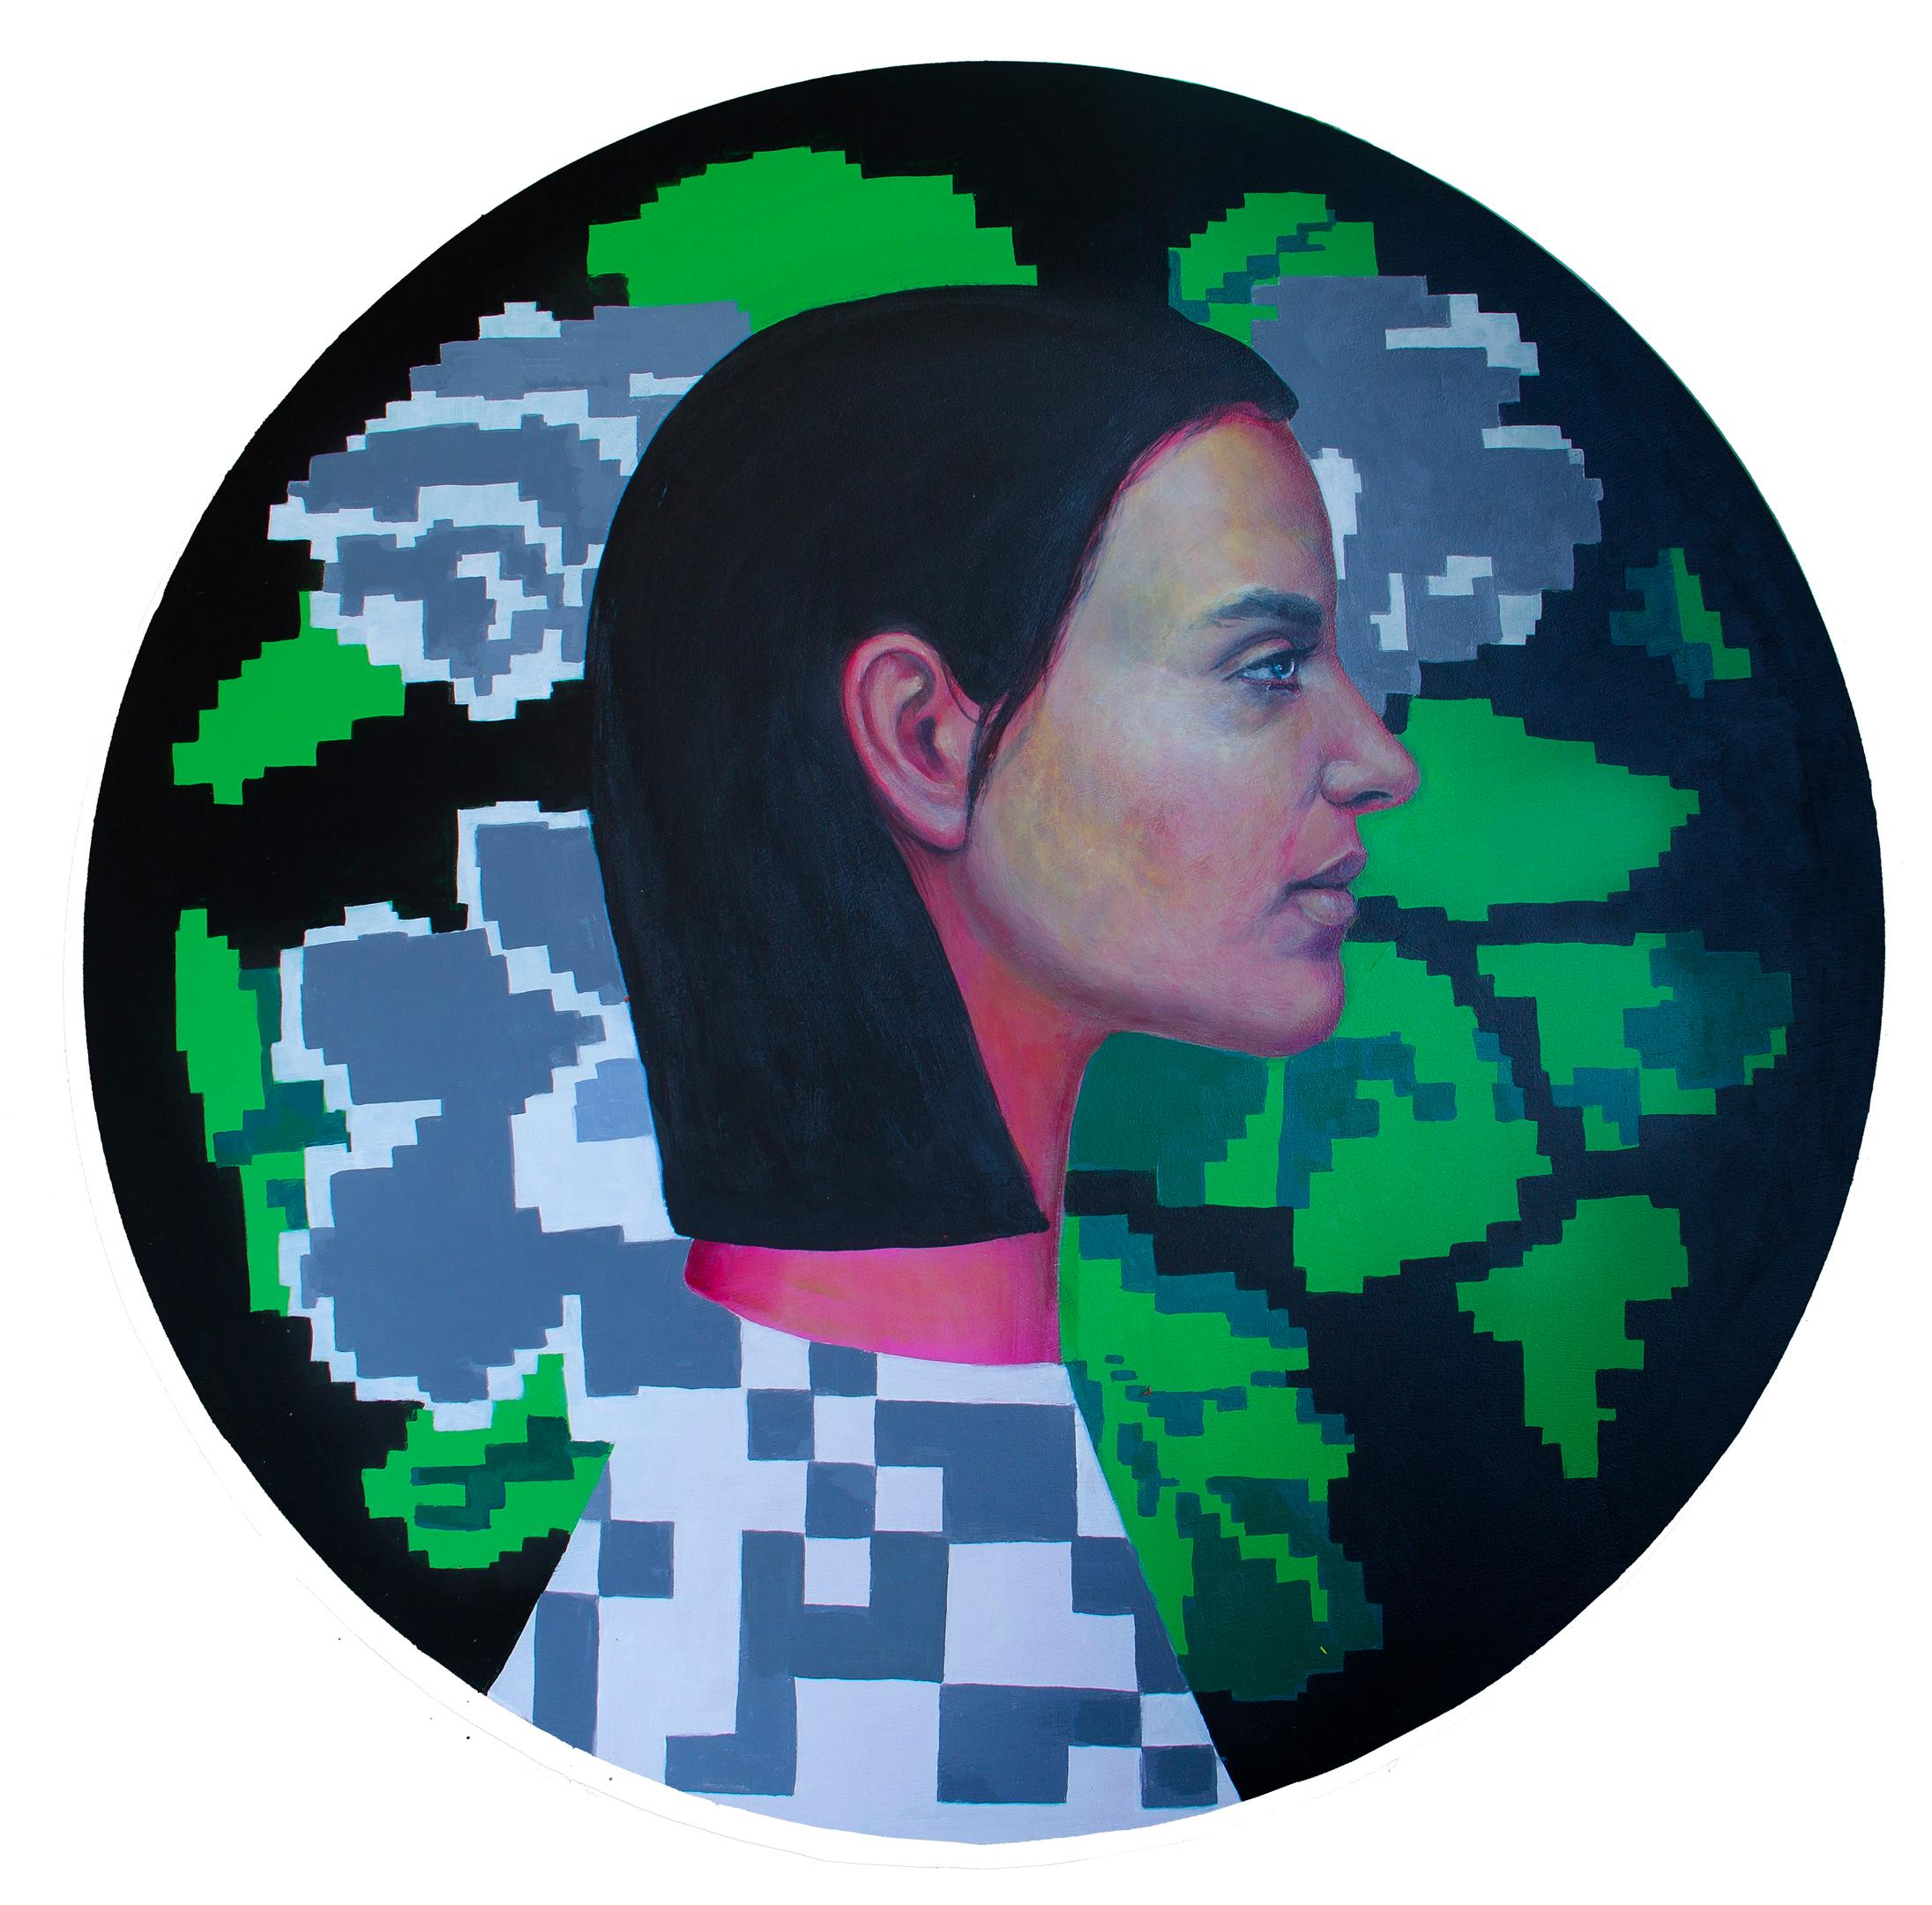 Portrait de femme sur un cercle de bois avec fleurs et pixels "Devise n°2 